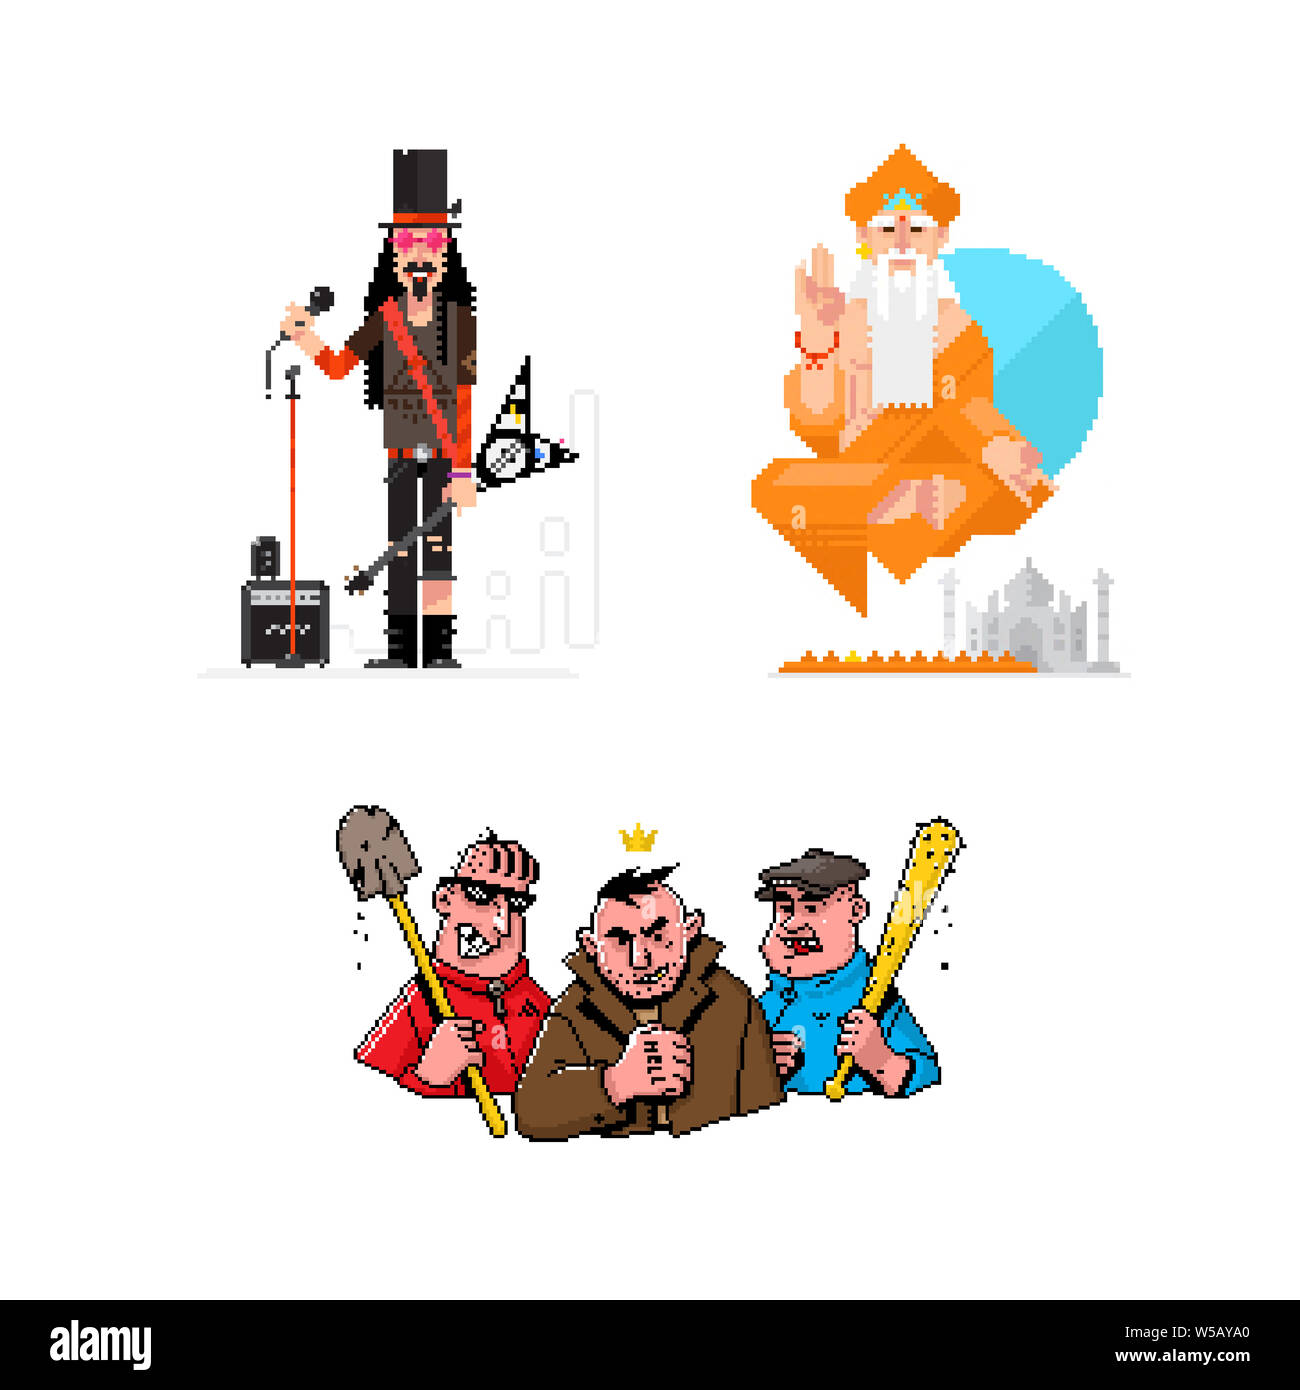 Des illustrations de personnages pixel musicien, yogi, gangsters. 8 peu de héros des jeux et des affiches. Des icônes pour vos sites et mises en page. Banque D'Images